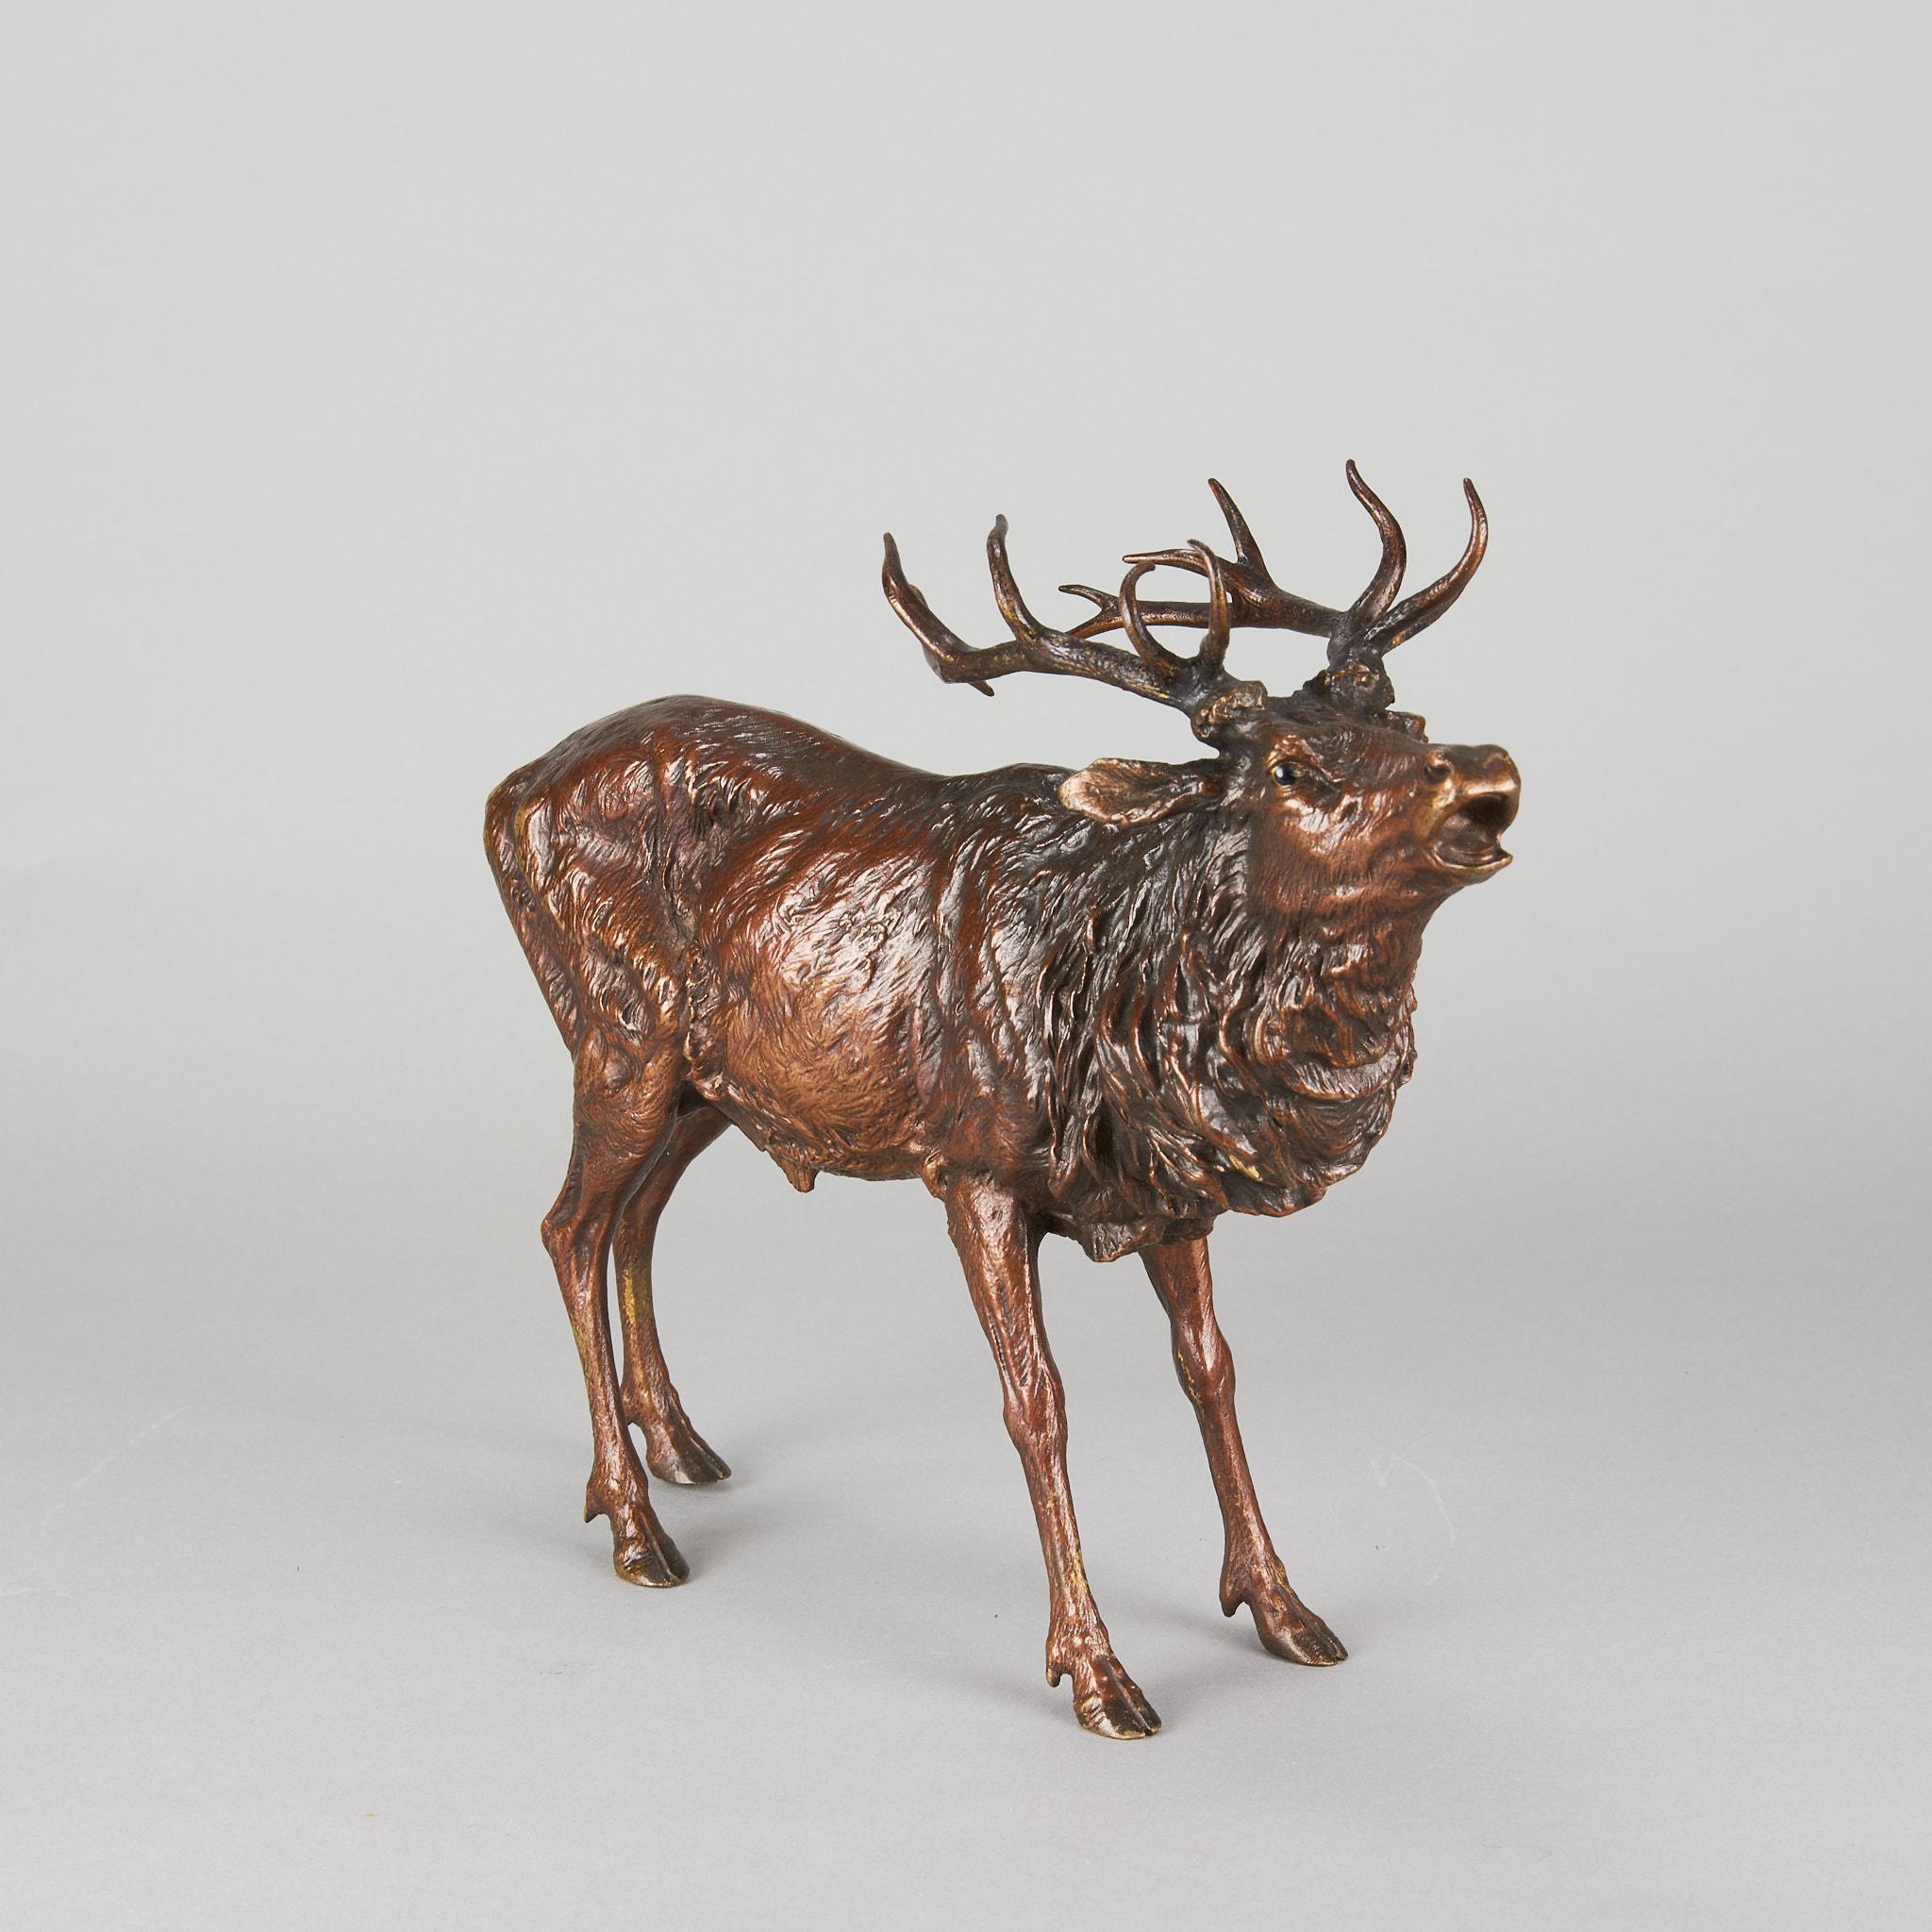 Impressionnante étude en bronze autrichienne du début du 20e siècle représentant un cerf au cou tendu qui 